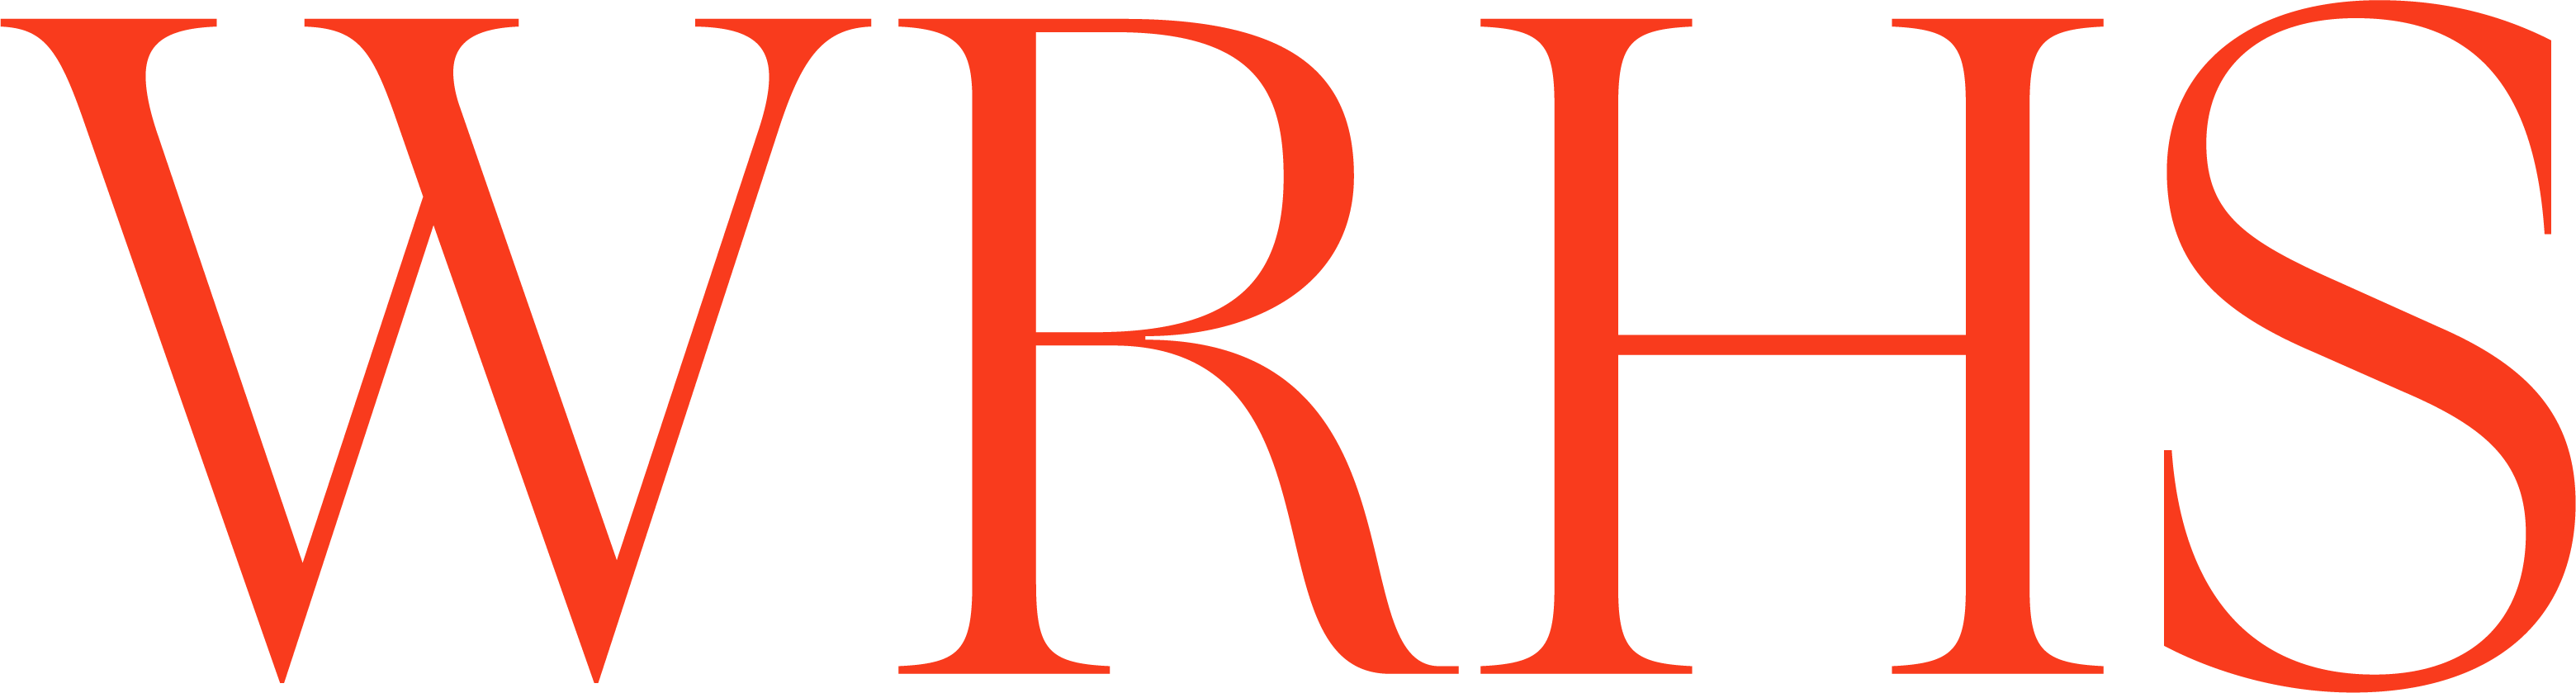 WRHS-logo